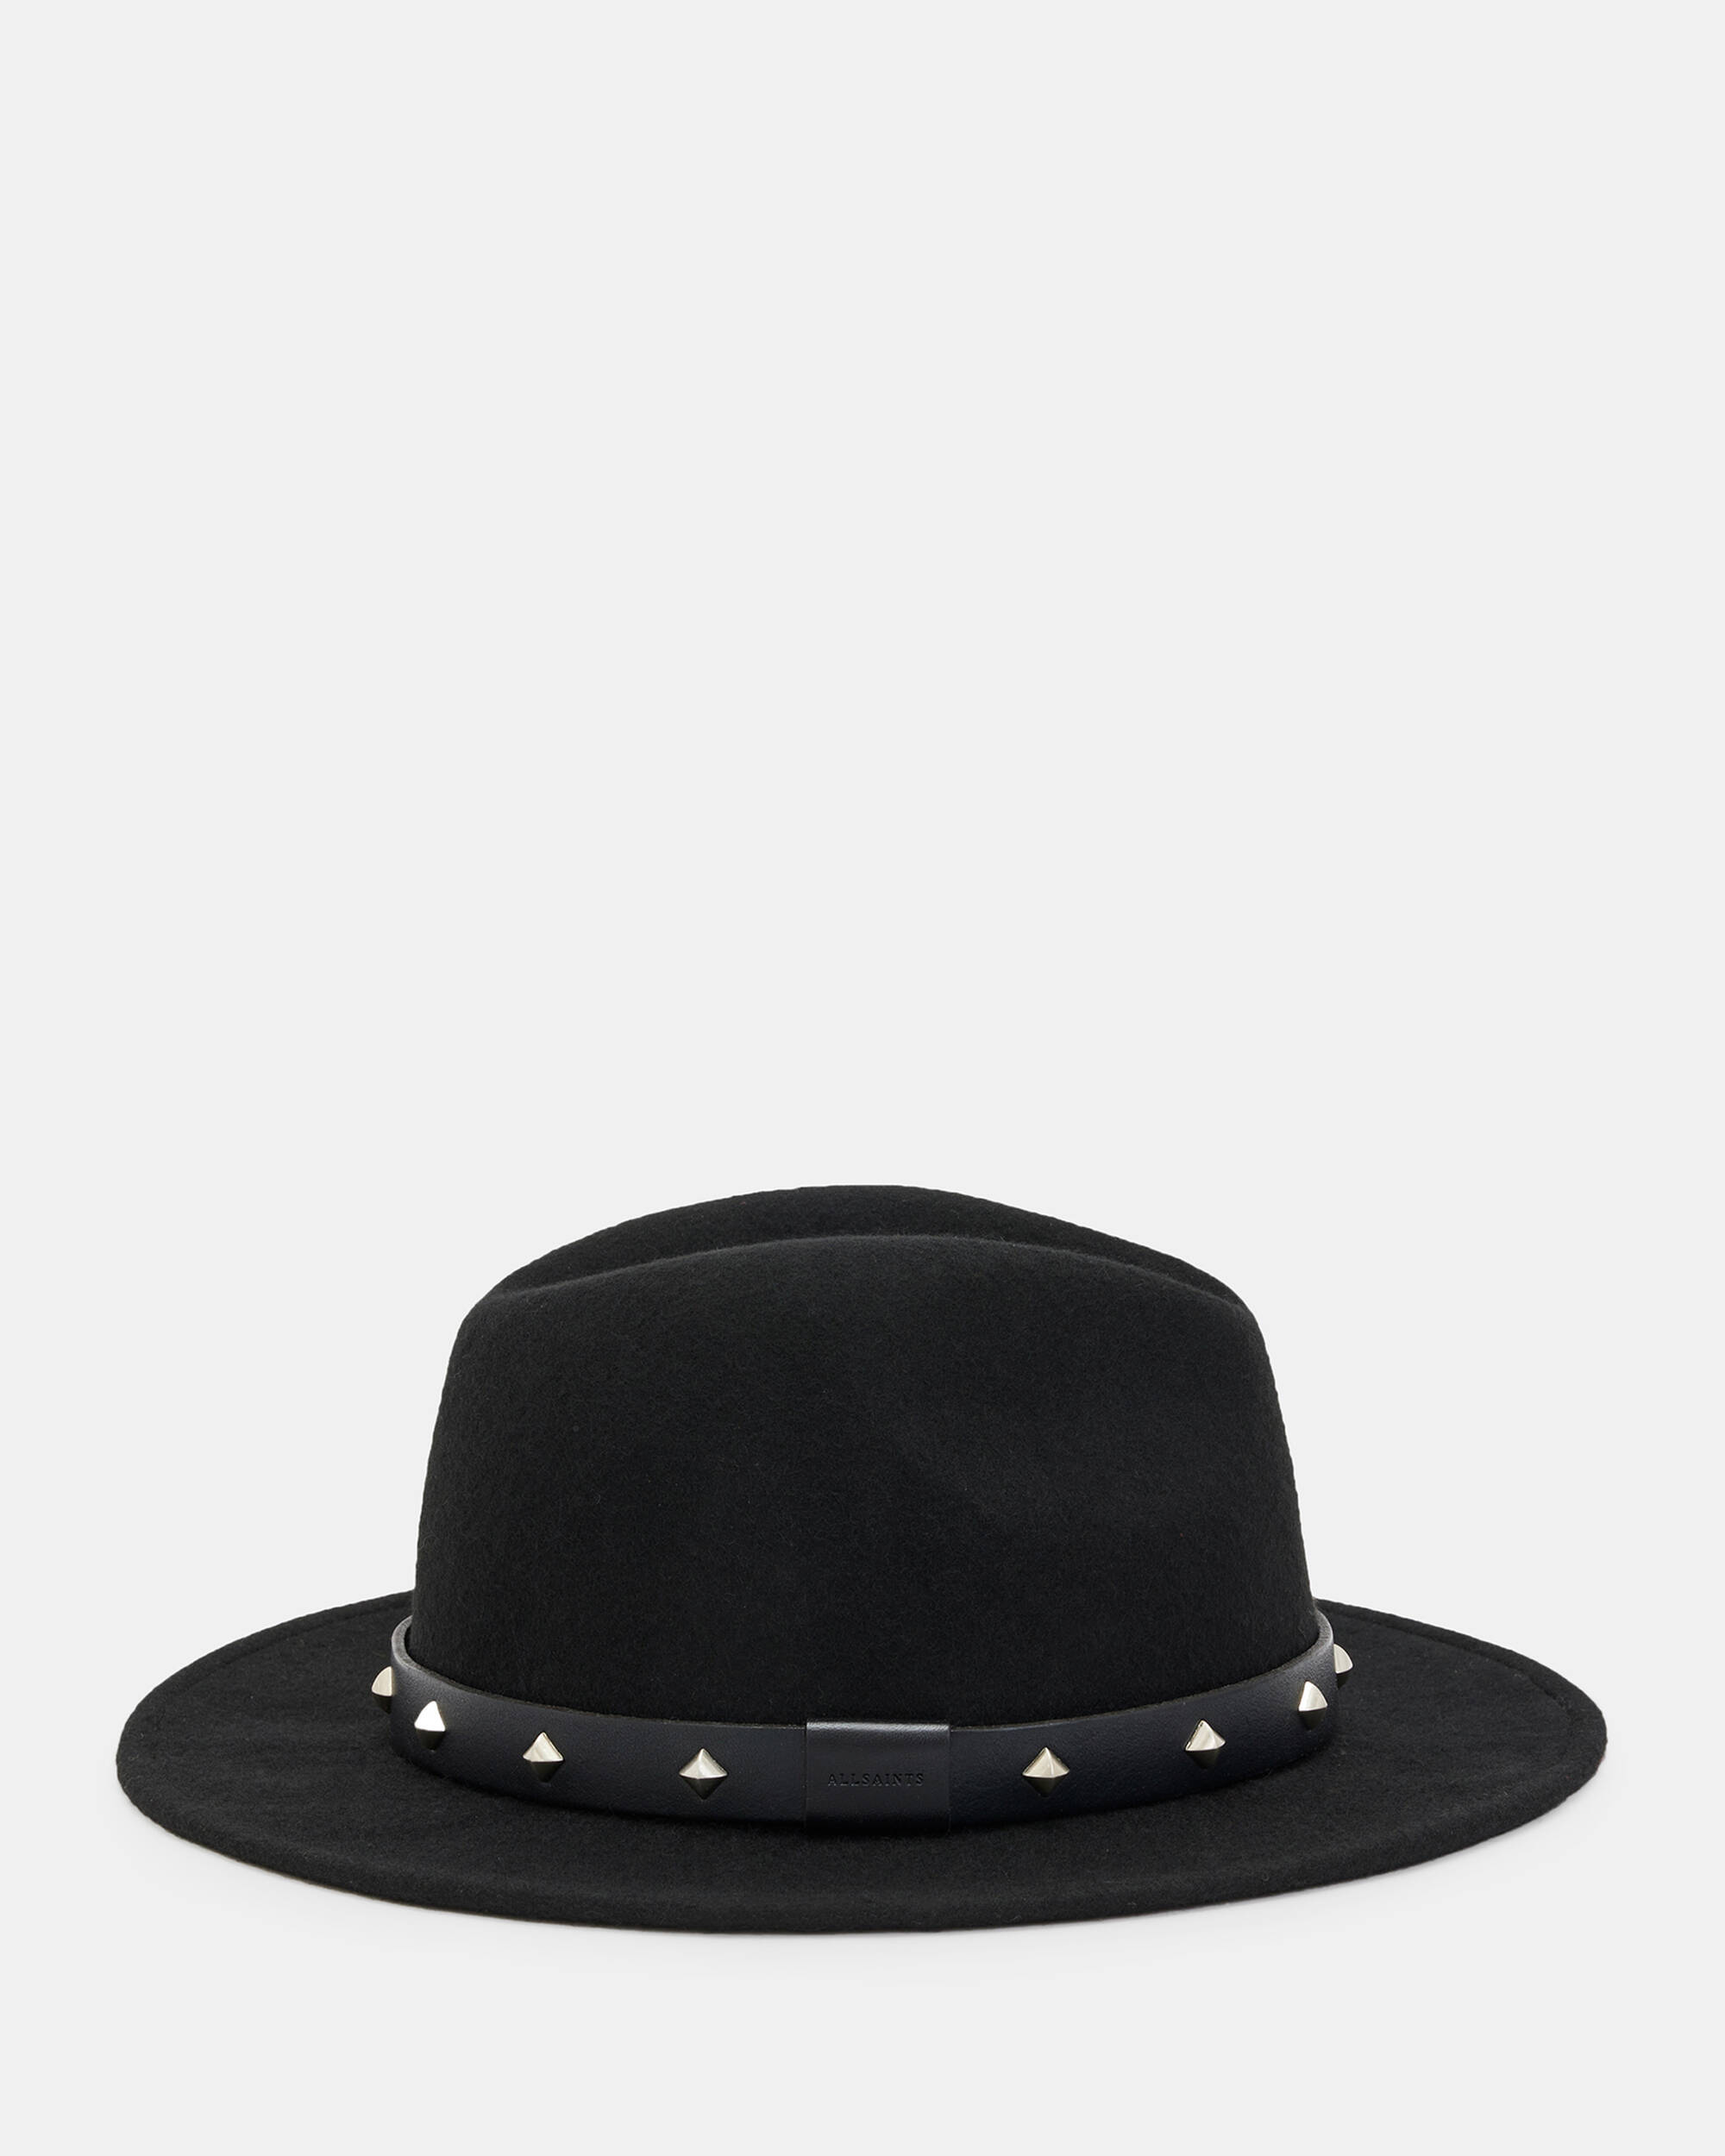 Maxie Studded Fedora Hat  large image number 5